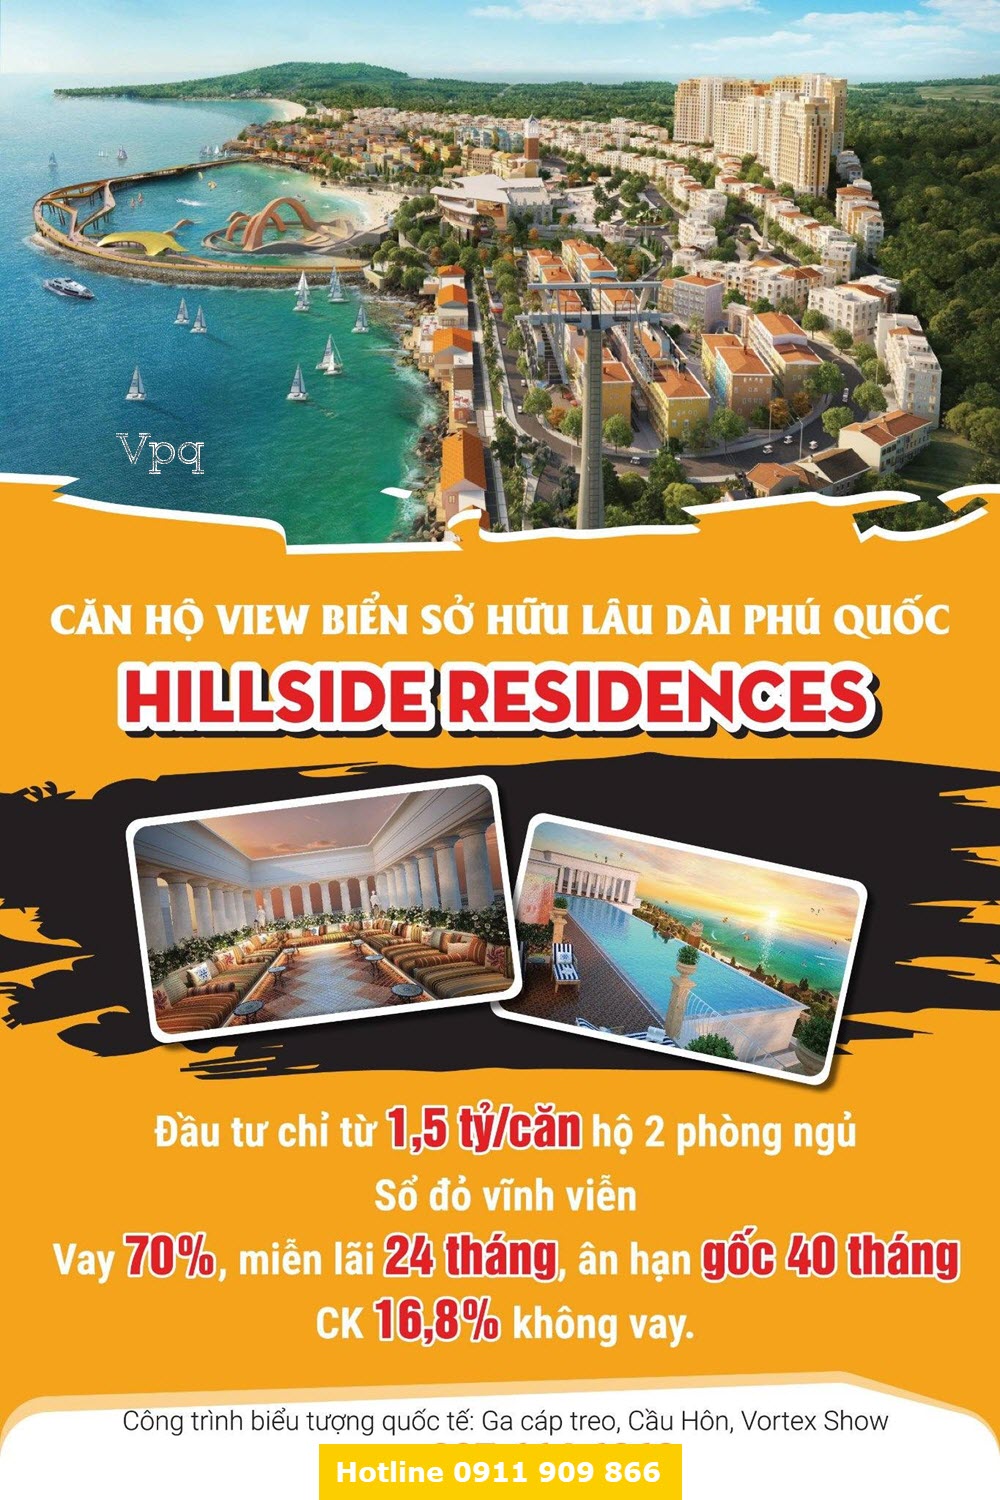 Chính sách ưu đãi căn hộ Sun Grand City Hillside Residence